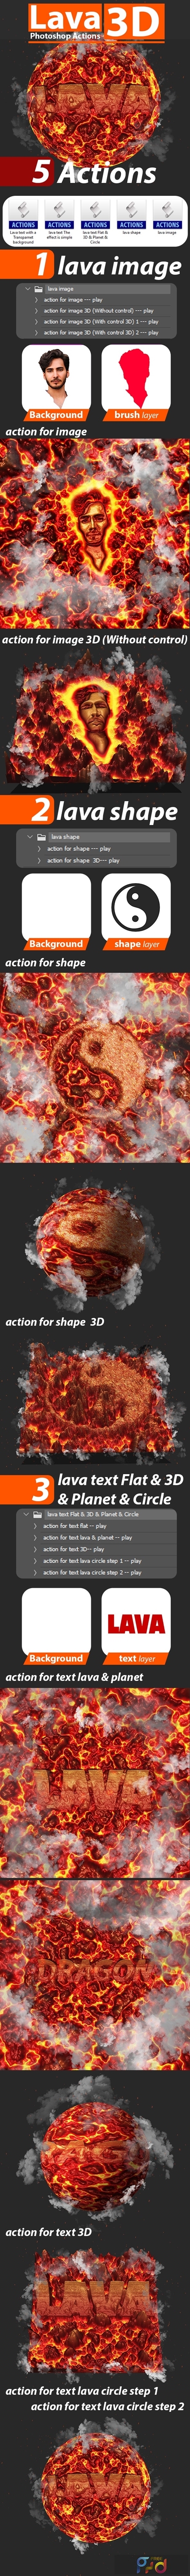 Lava 3D Photoshop Actions 24828845 1